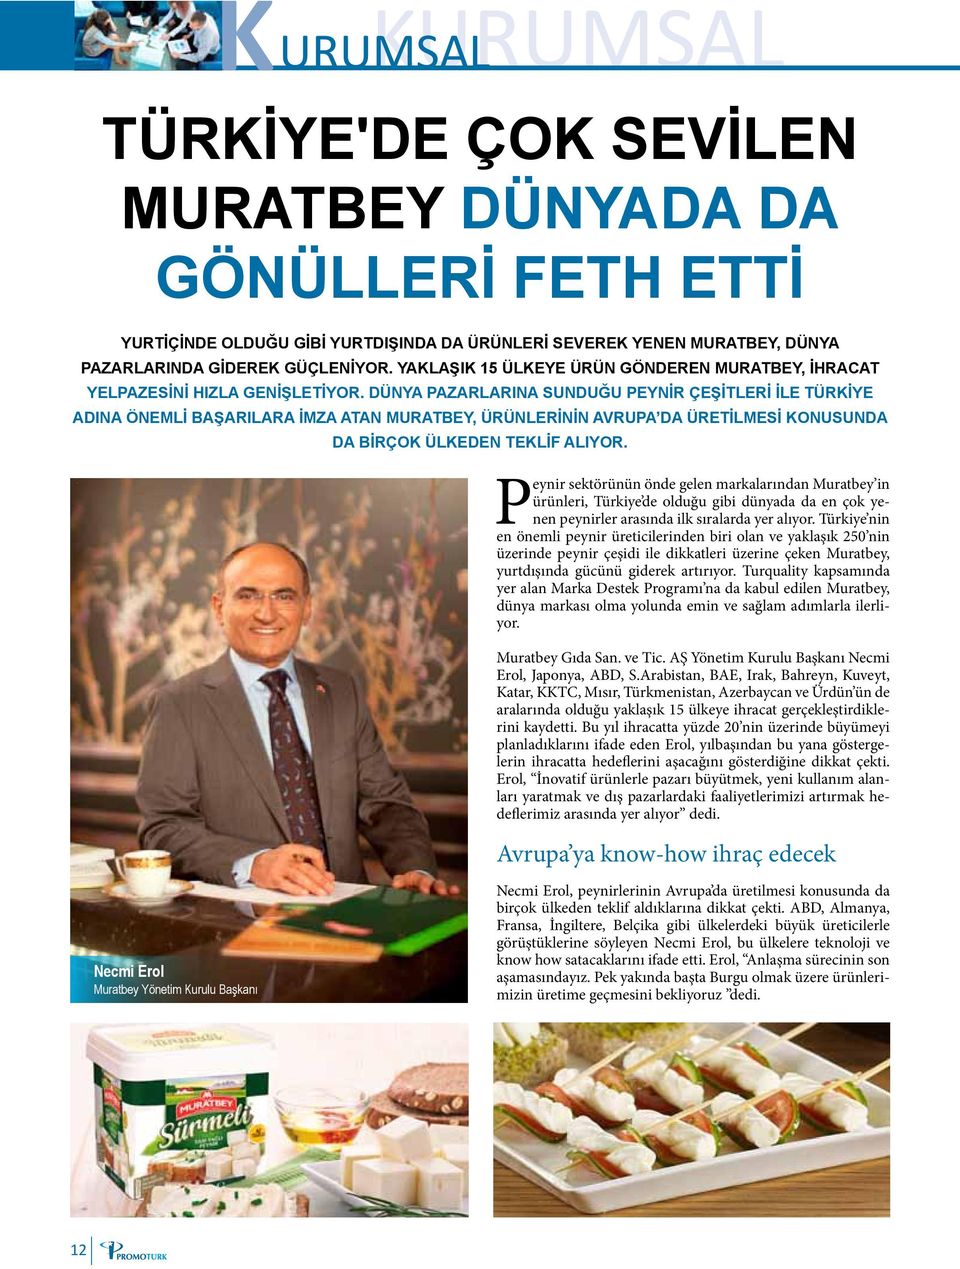 Turquality kapsamında yer alan Marka Destek Programı na da kabul edilen Muratbey, dünya markası olma yolunda emin ve sağlam adımlarla ilerliyor. Muratbey Gıda San. ve Tic.